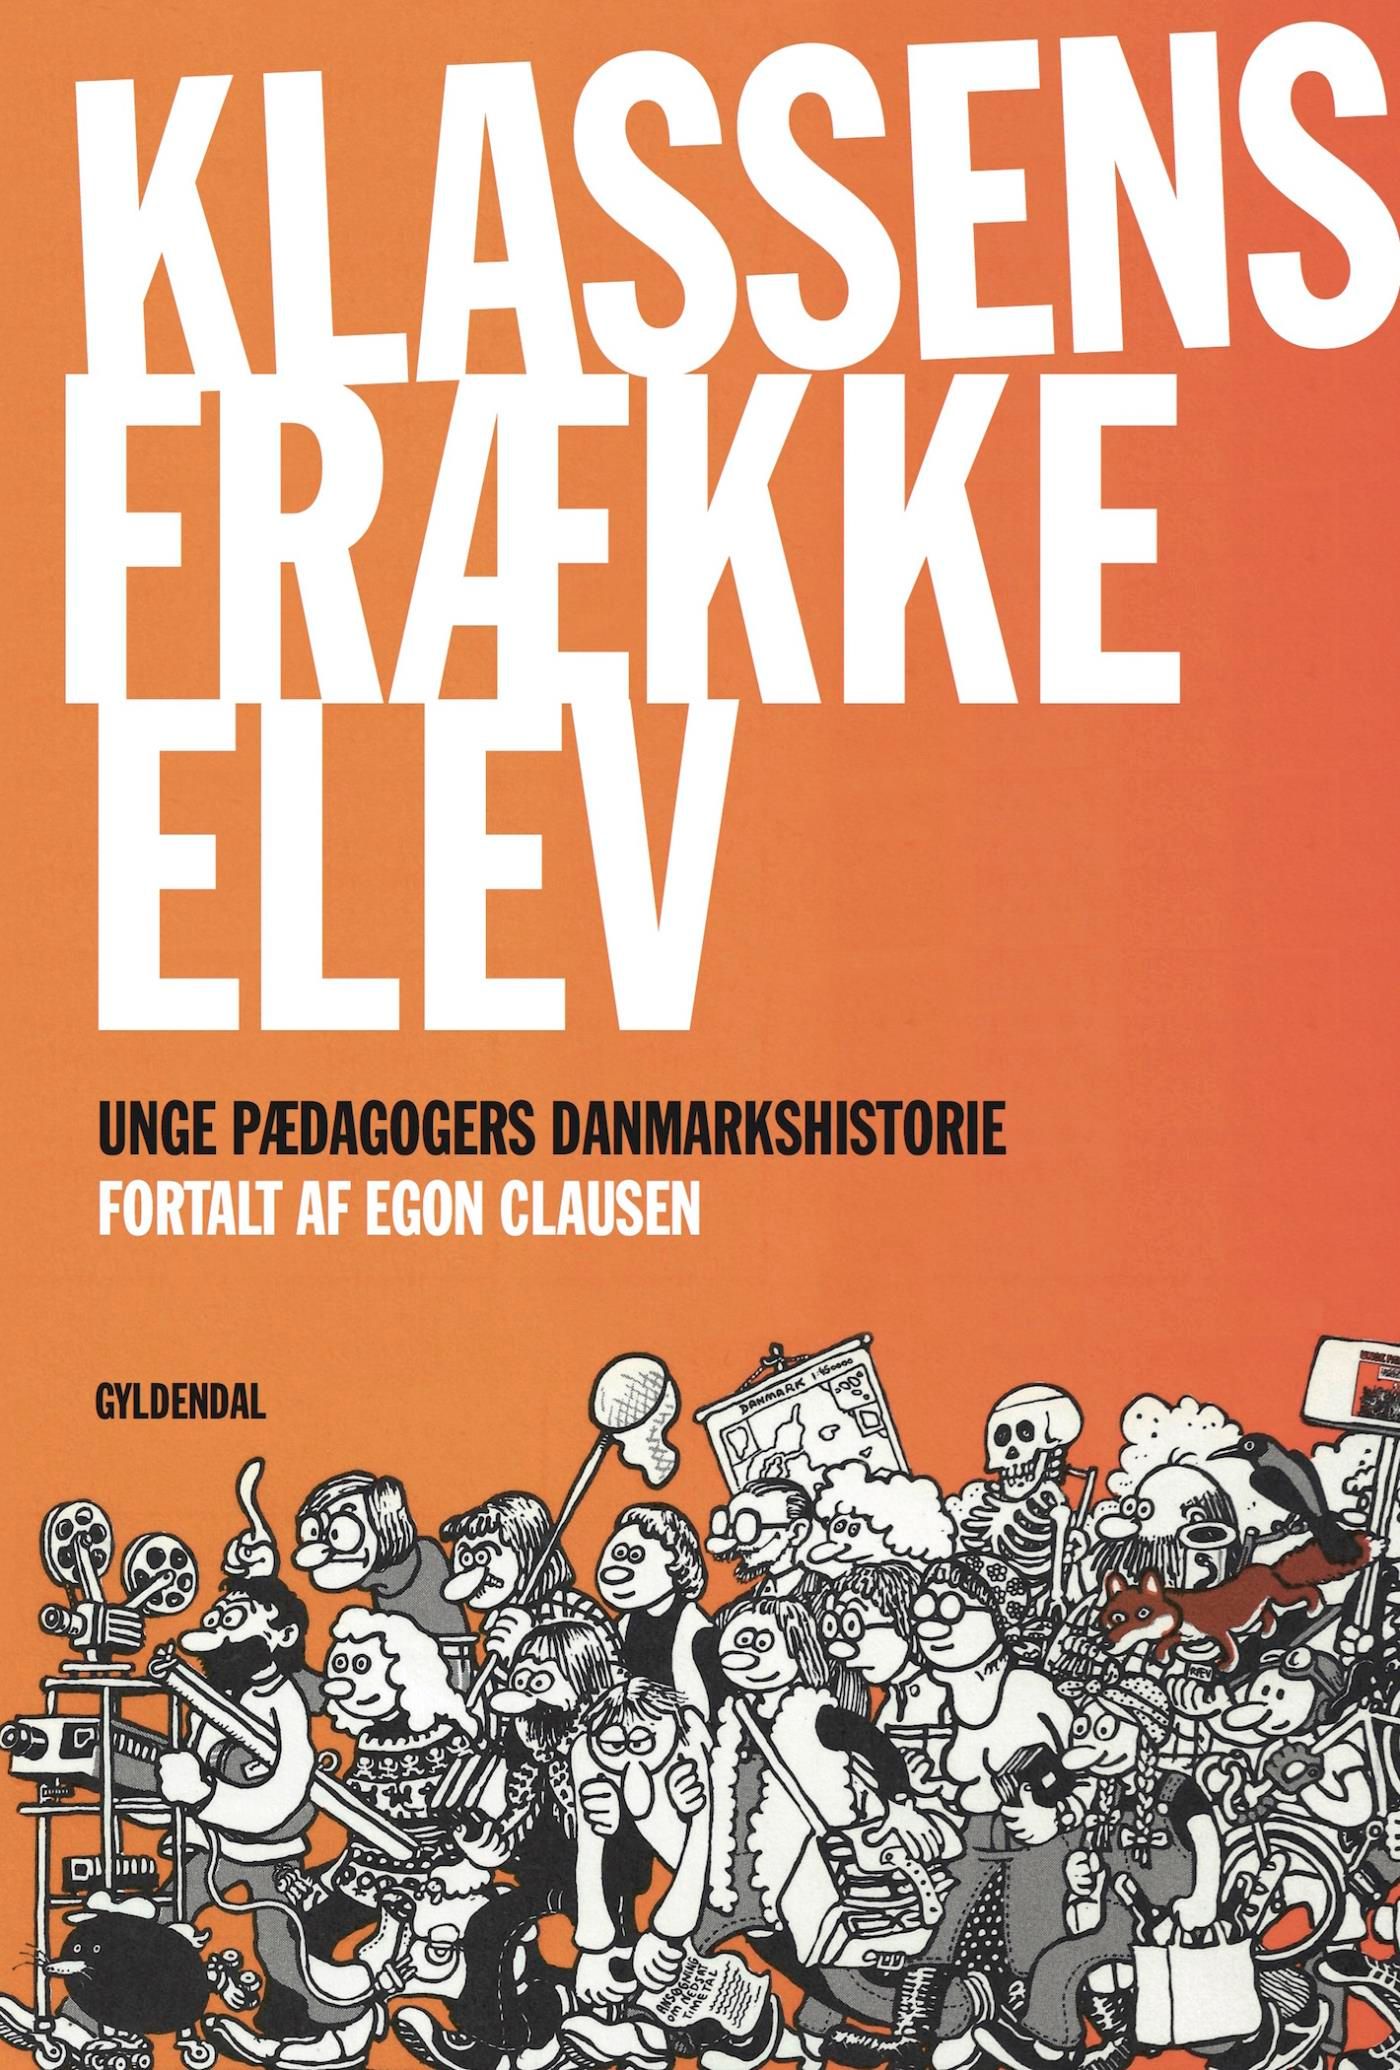 Klassens frække elev, e-bog af Egon Clausen